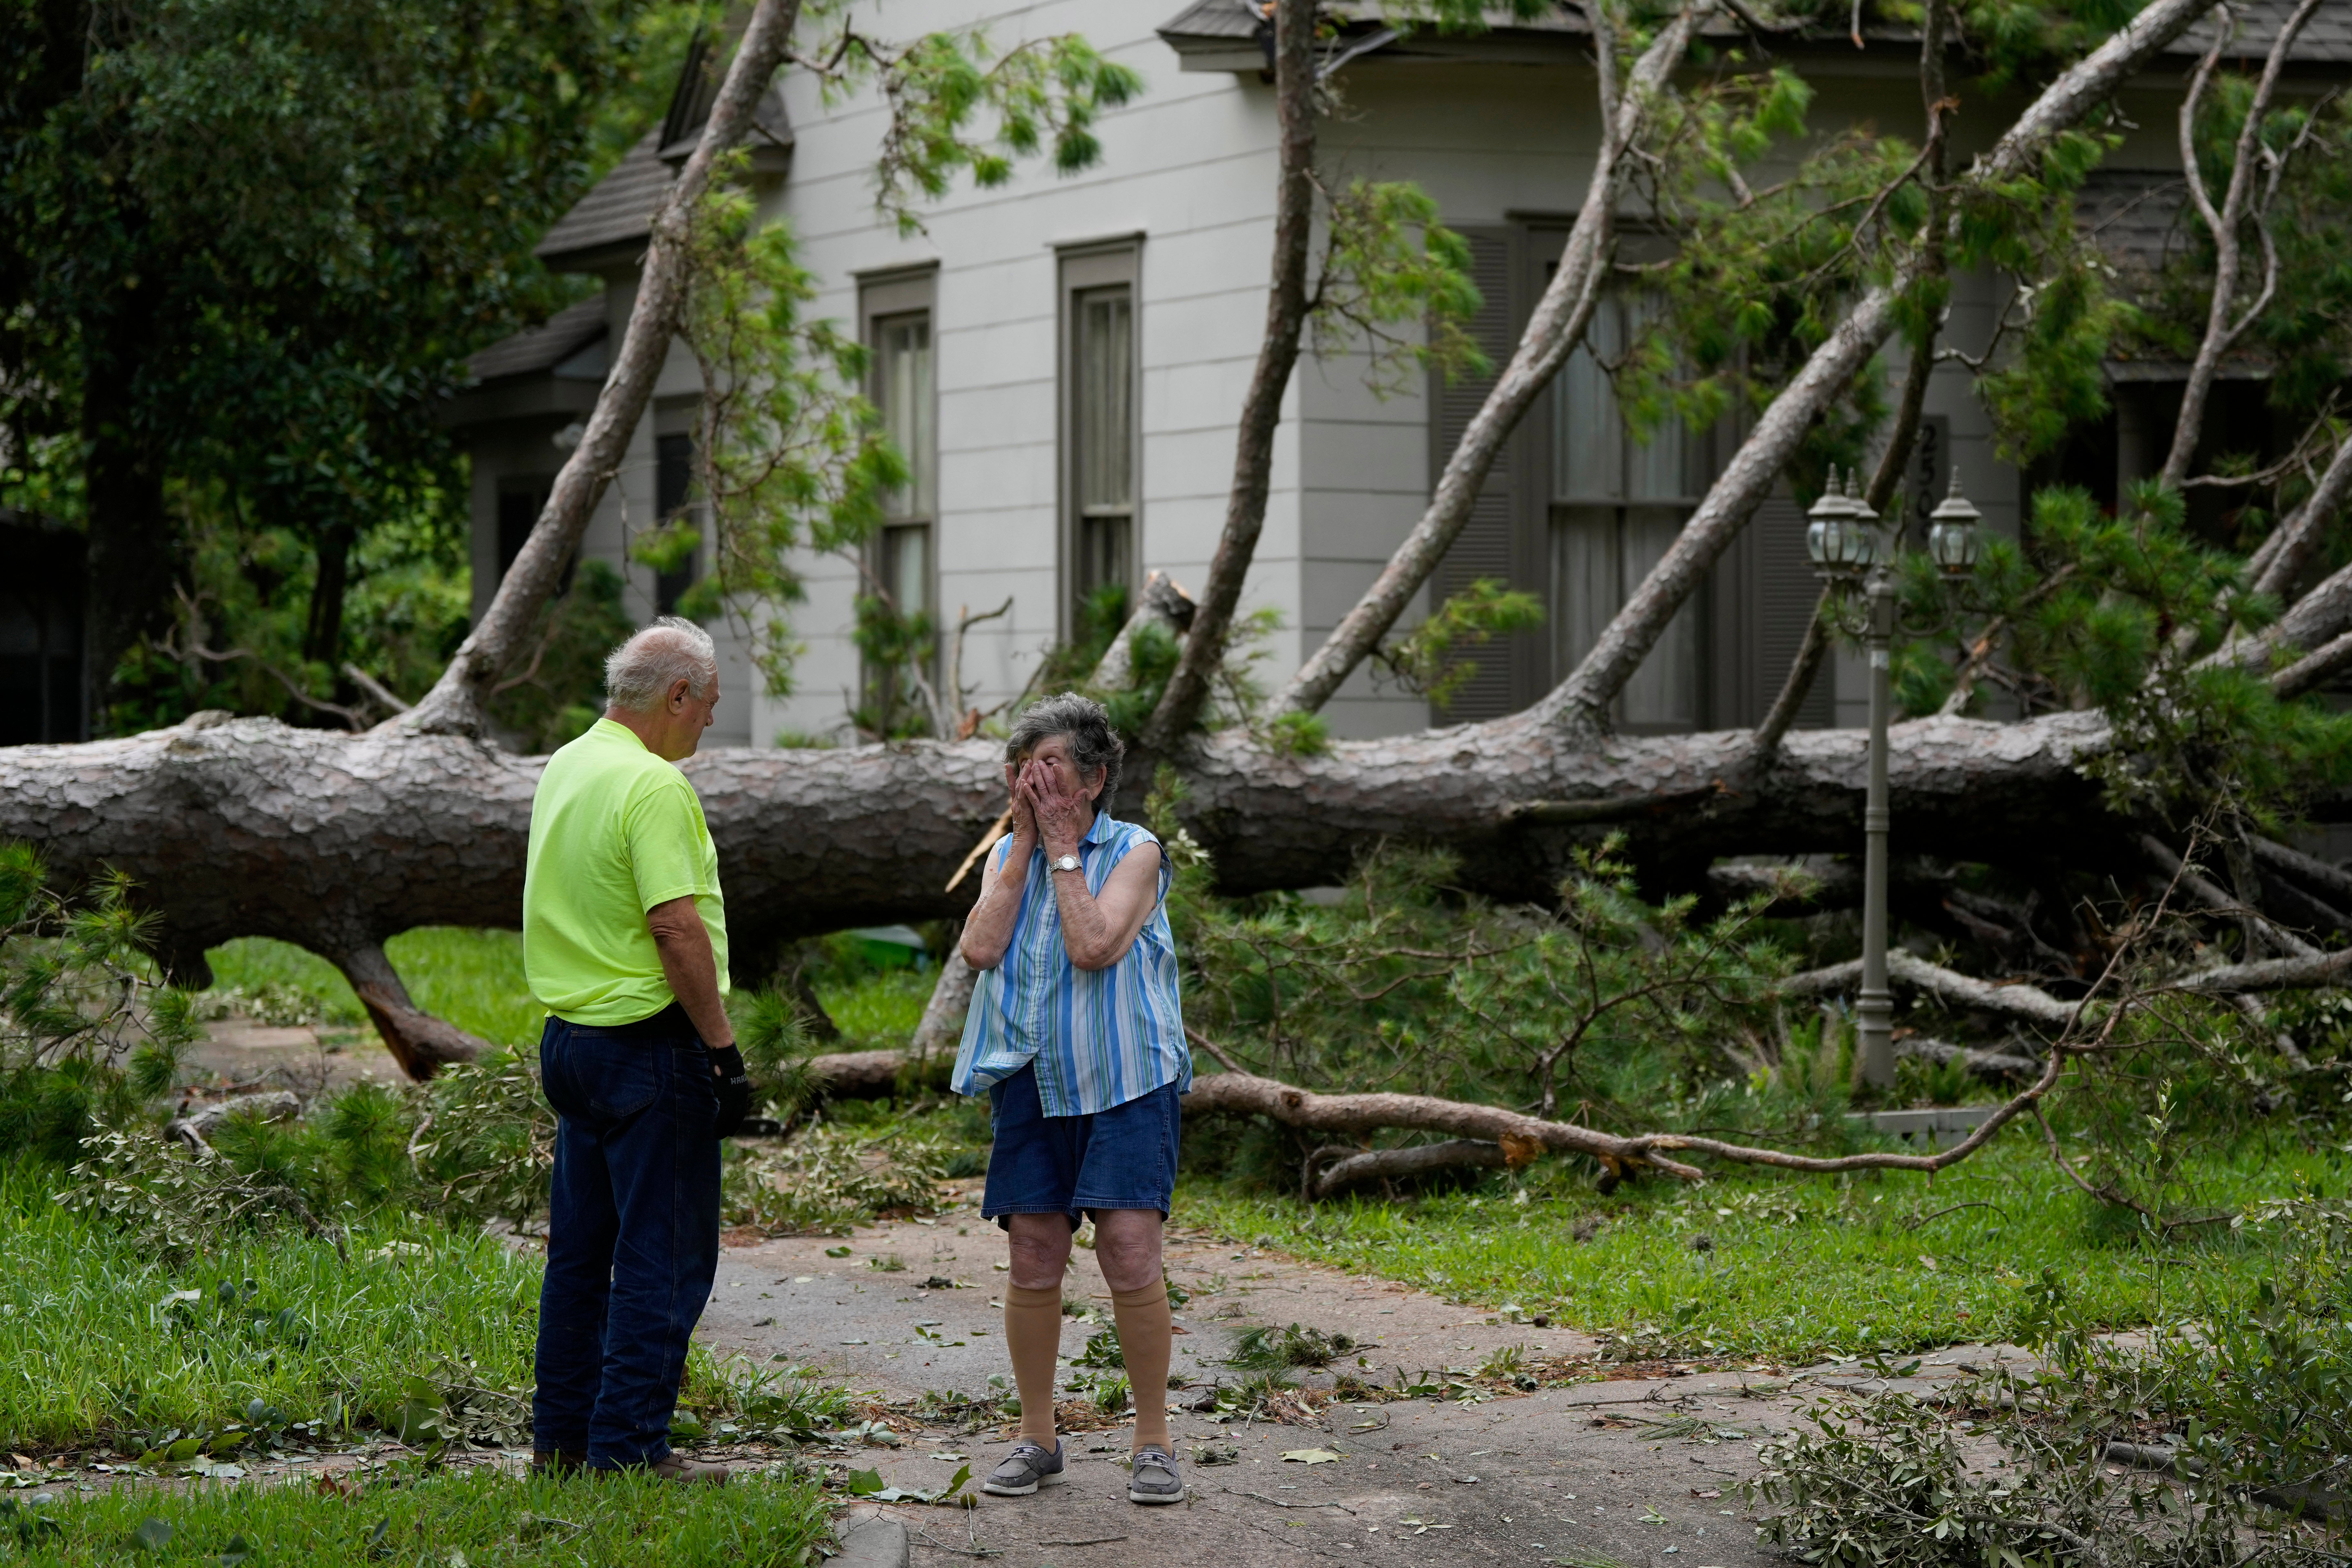 El huracán Beryl se degradó a tormenta tropical después de azotar Texas con vientos de 100 mph: actualizaciones del rastreador en vivo